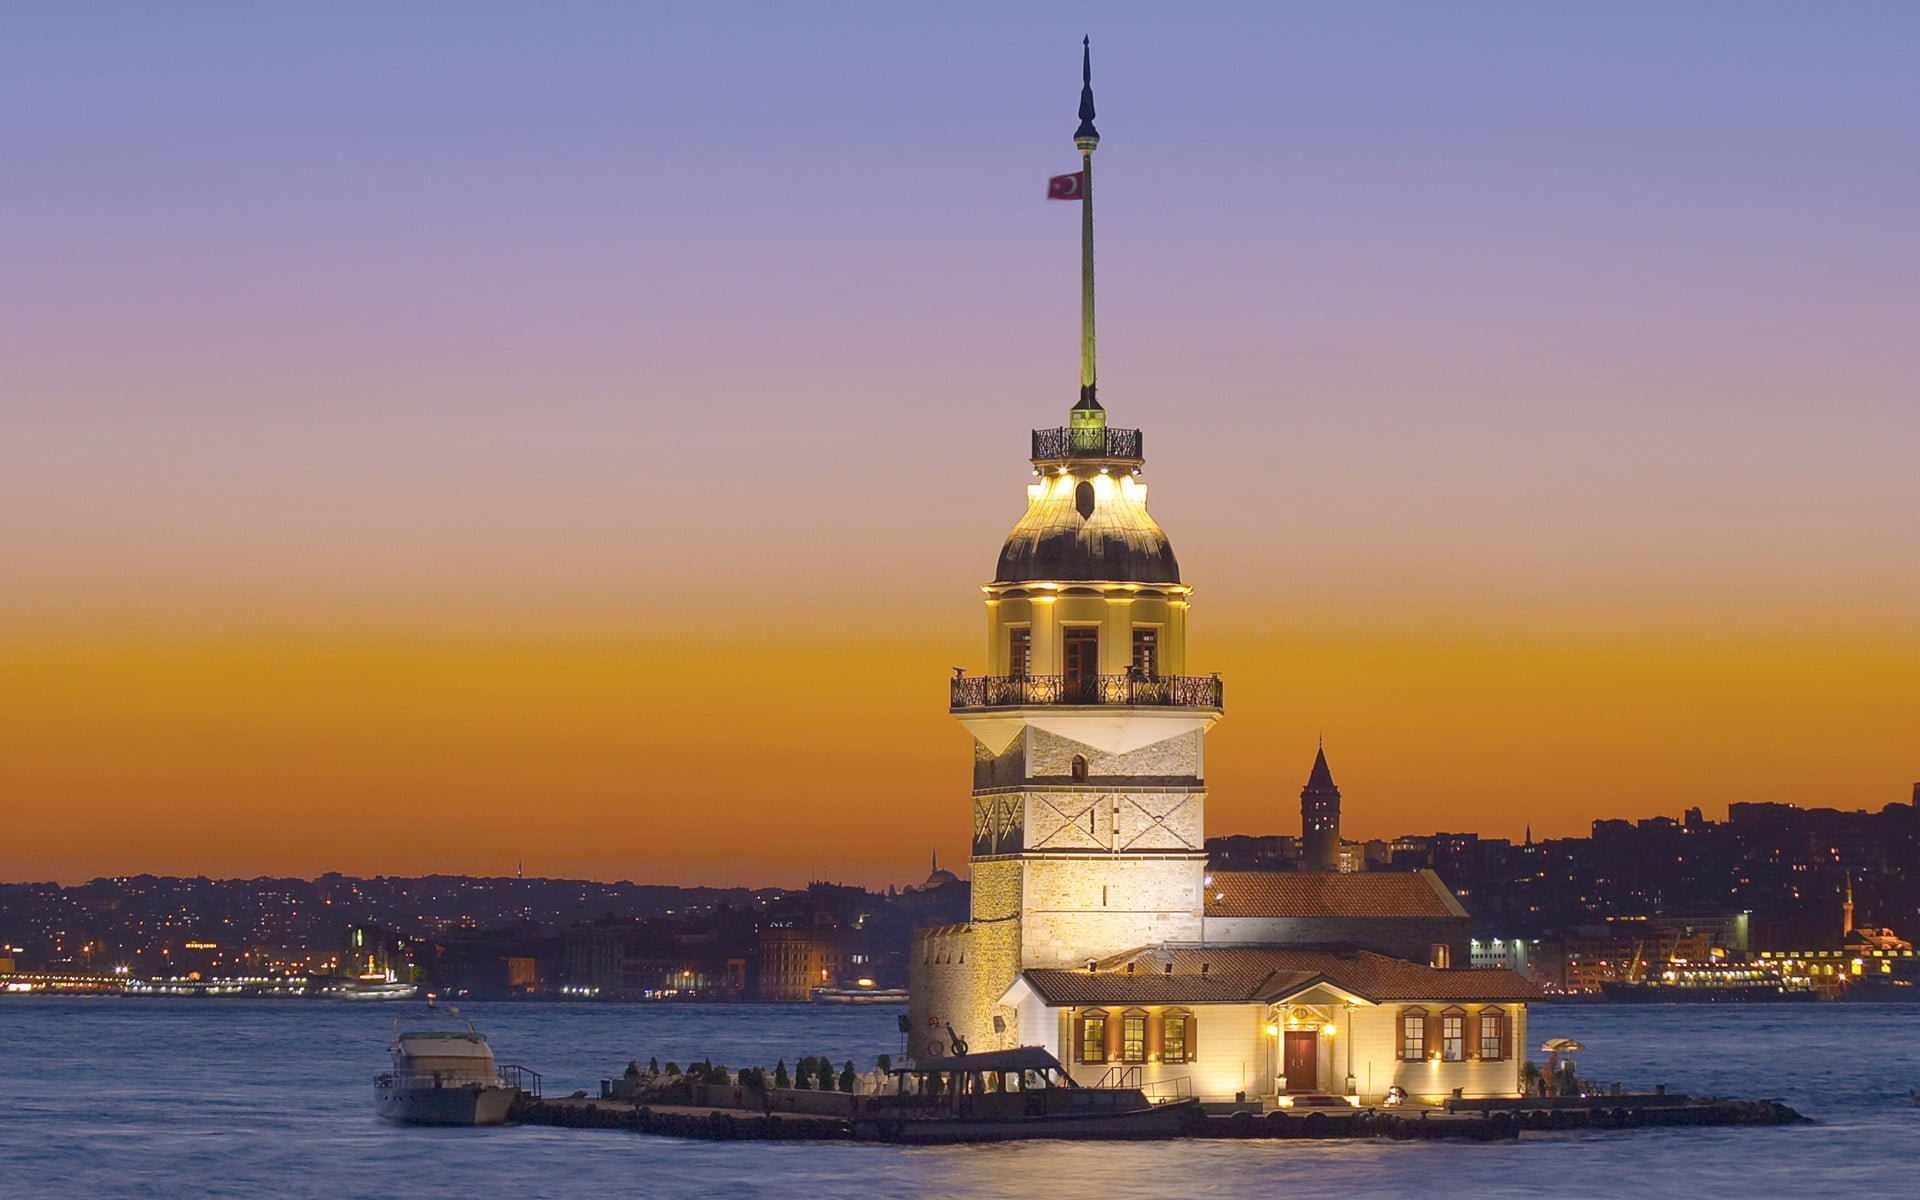 Kiz Kulesi (Maiden's Tower), Salamac, Bosphorus, Istanbul, Turkey